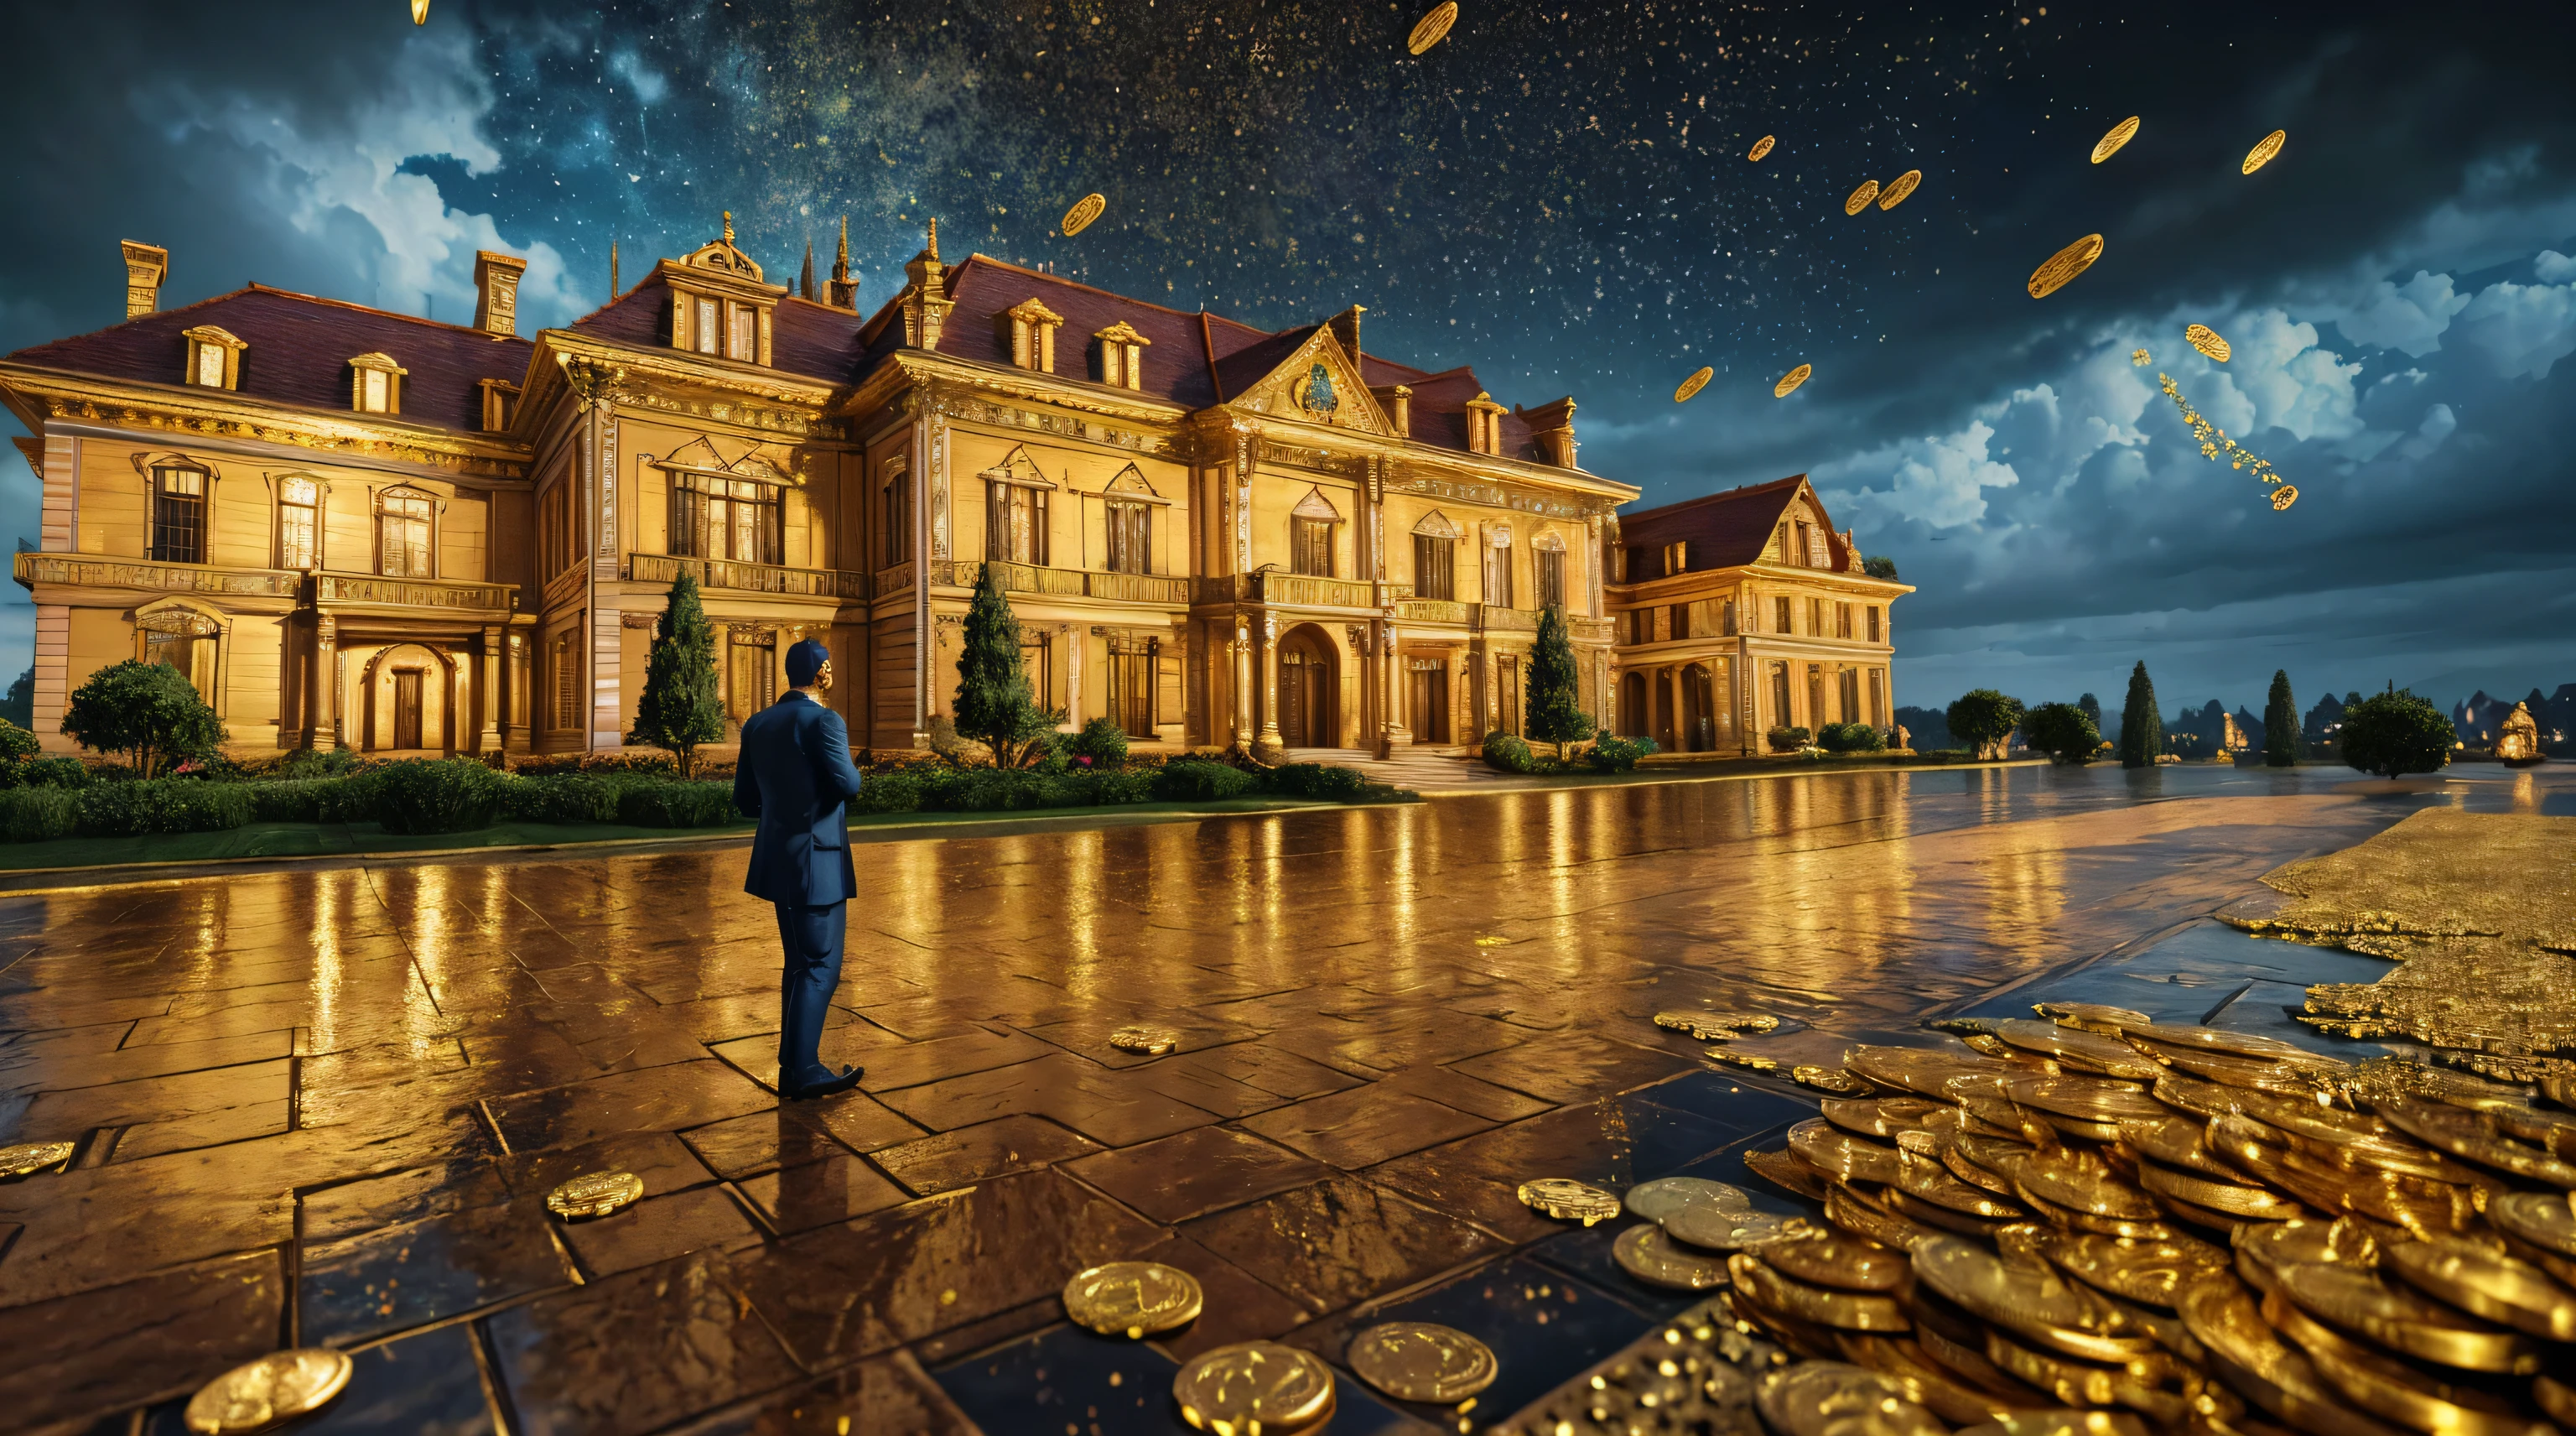 Мужчина перед особняком, полным золотых монет, падающих с неба, сверхдетальное изображение, реализм, 8К, гипердетализированный скин, Насыщенные и яркие цвета.
